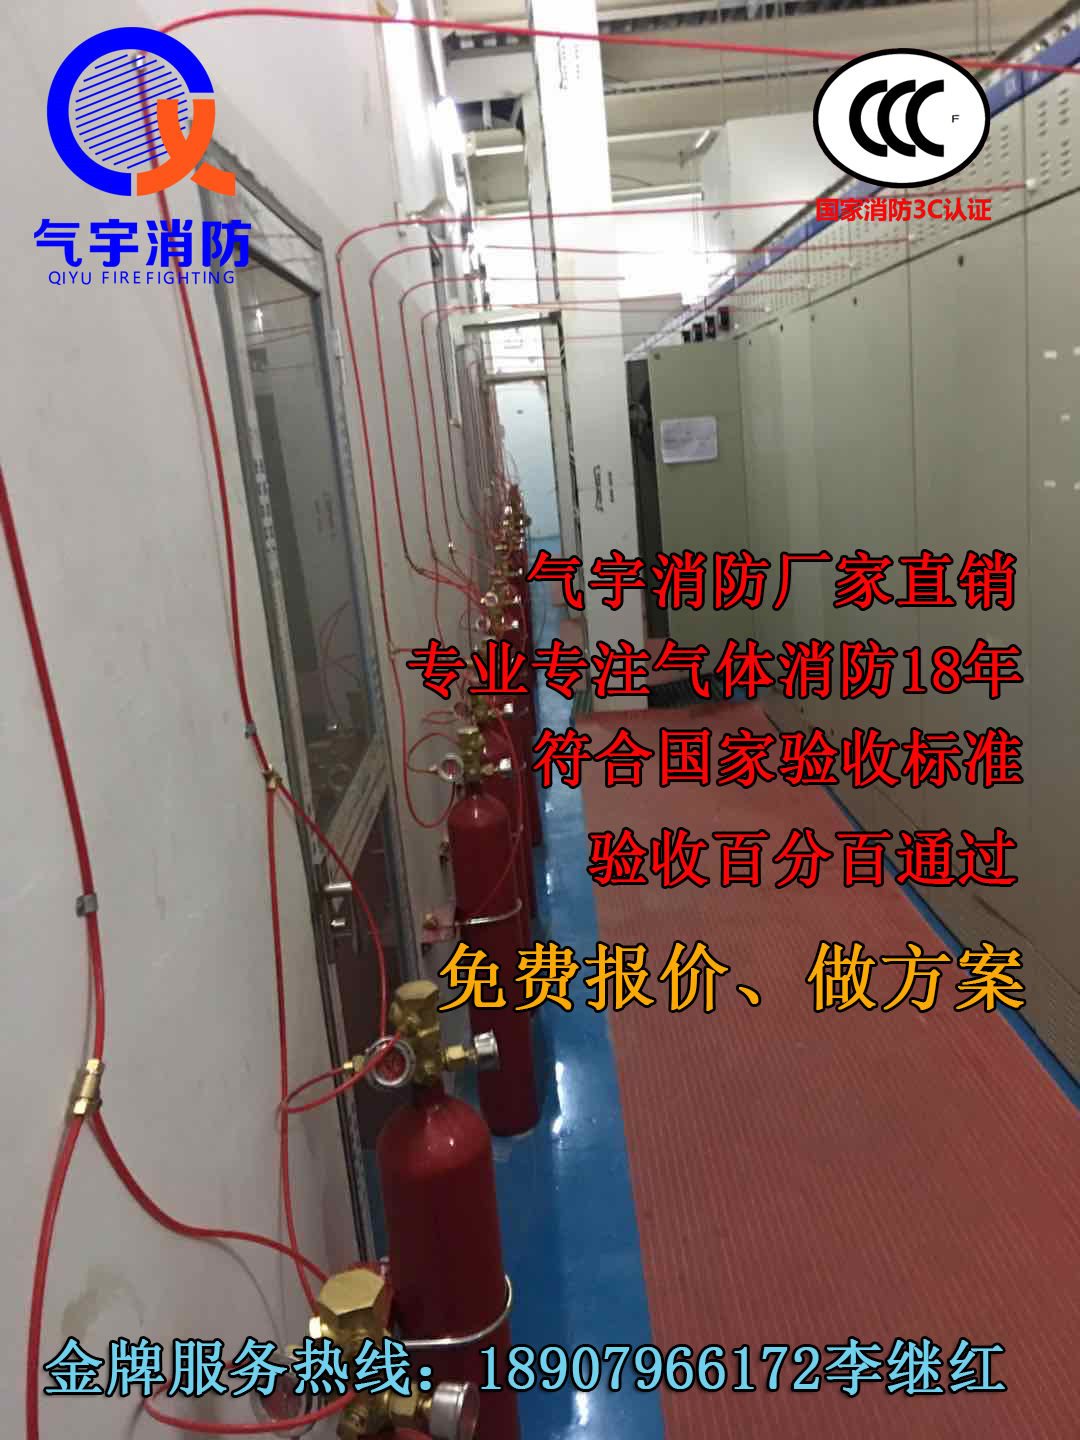 全国热销产品 火探管感温自启动灭火装置 广州气宇消防质美价优